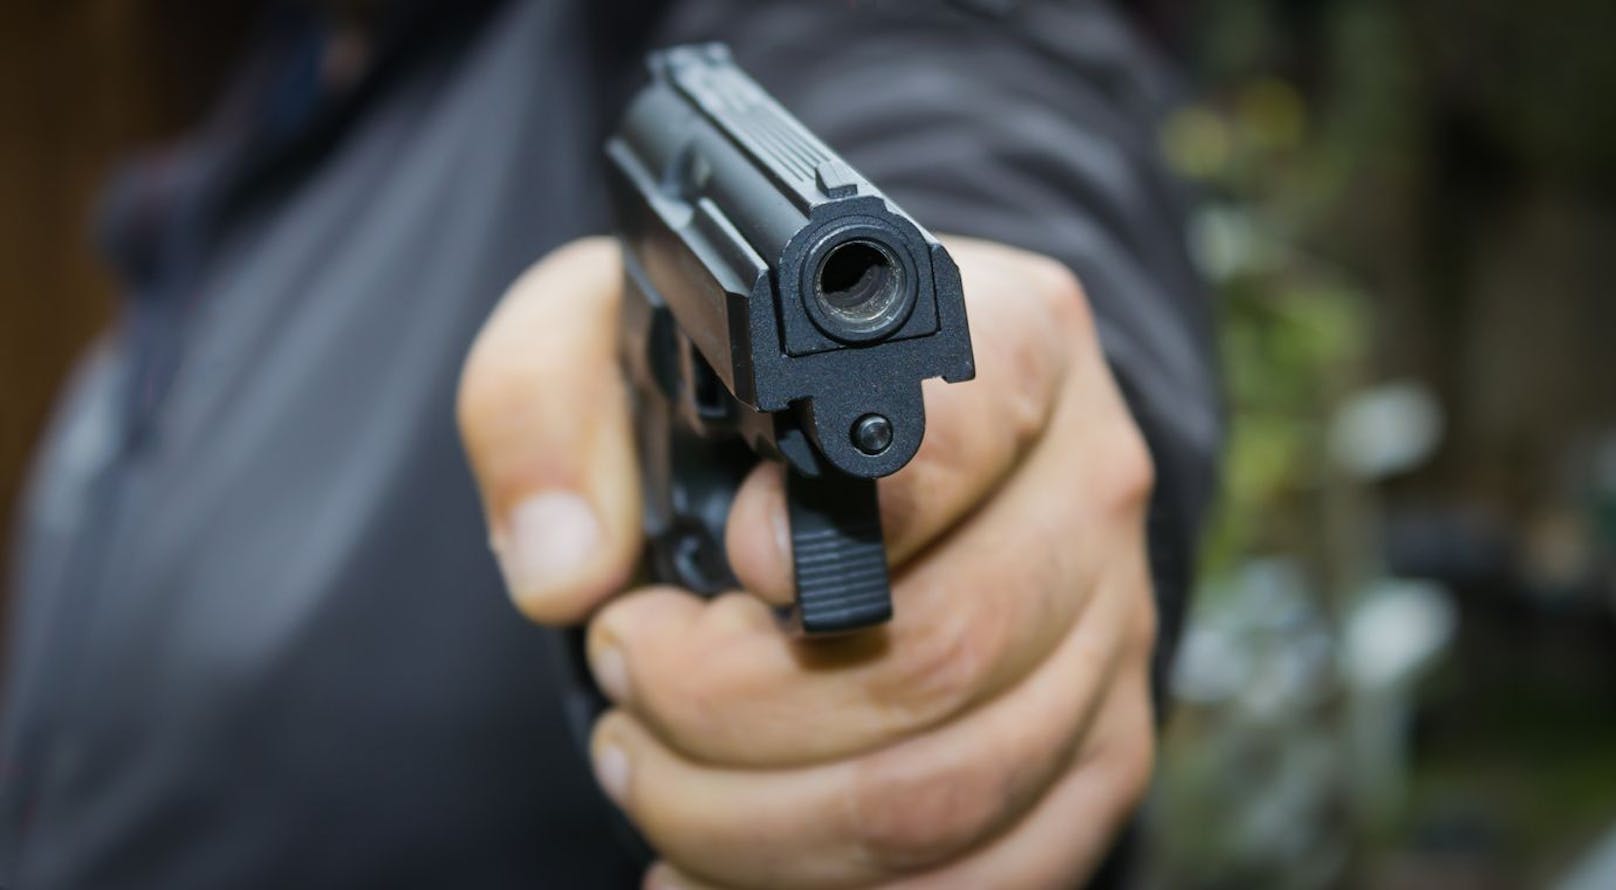 Mann schießt um sich – Polizei macht bedenklichen Fund